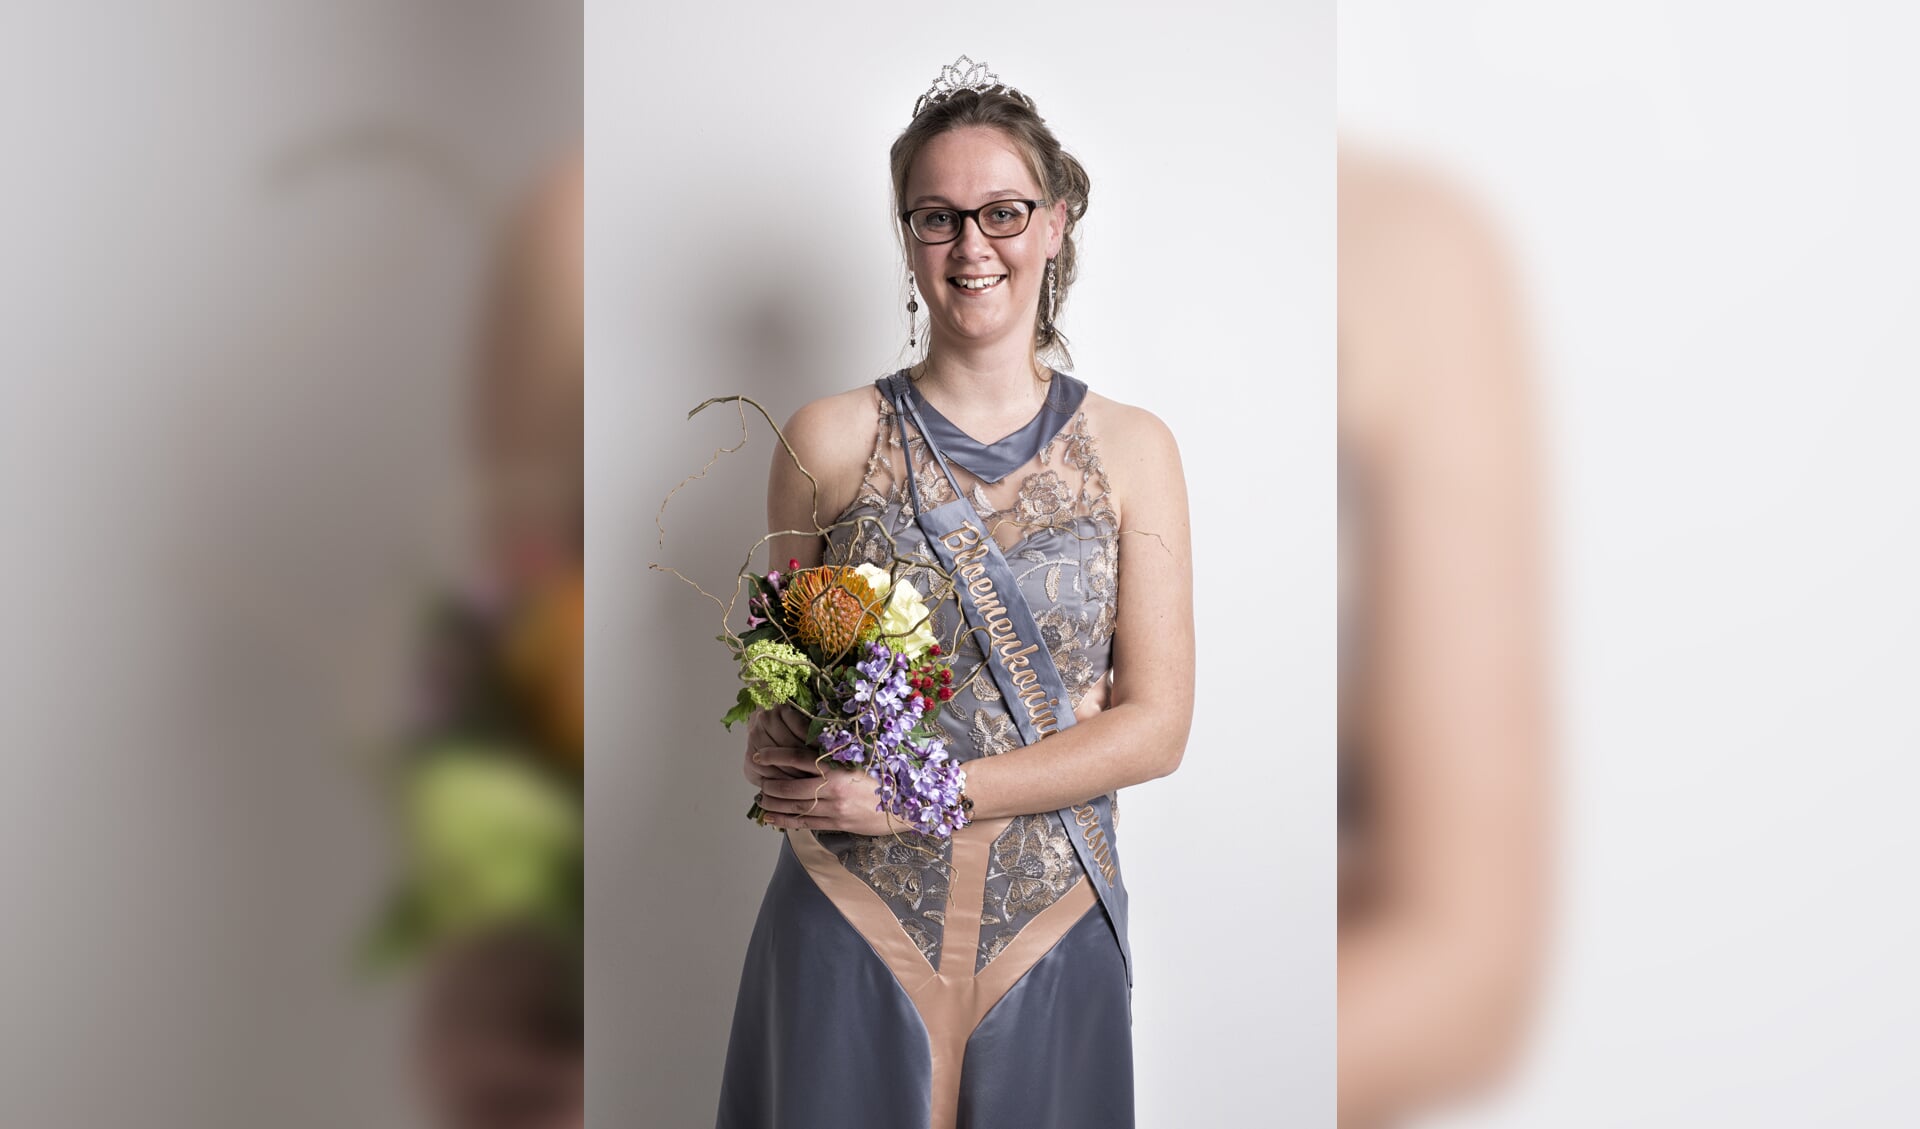 Bloemenkoningin 2018 Gerina van der Sijs in haar jurk gemaakt door Modevakschool Wouda.